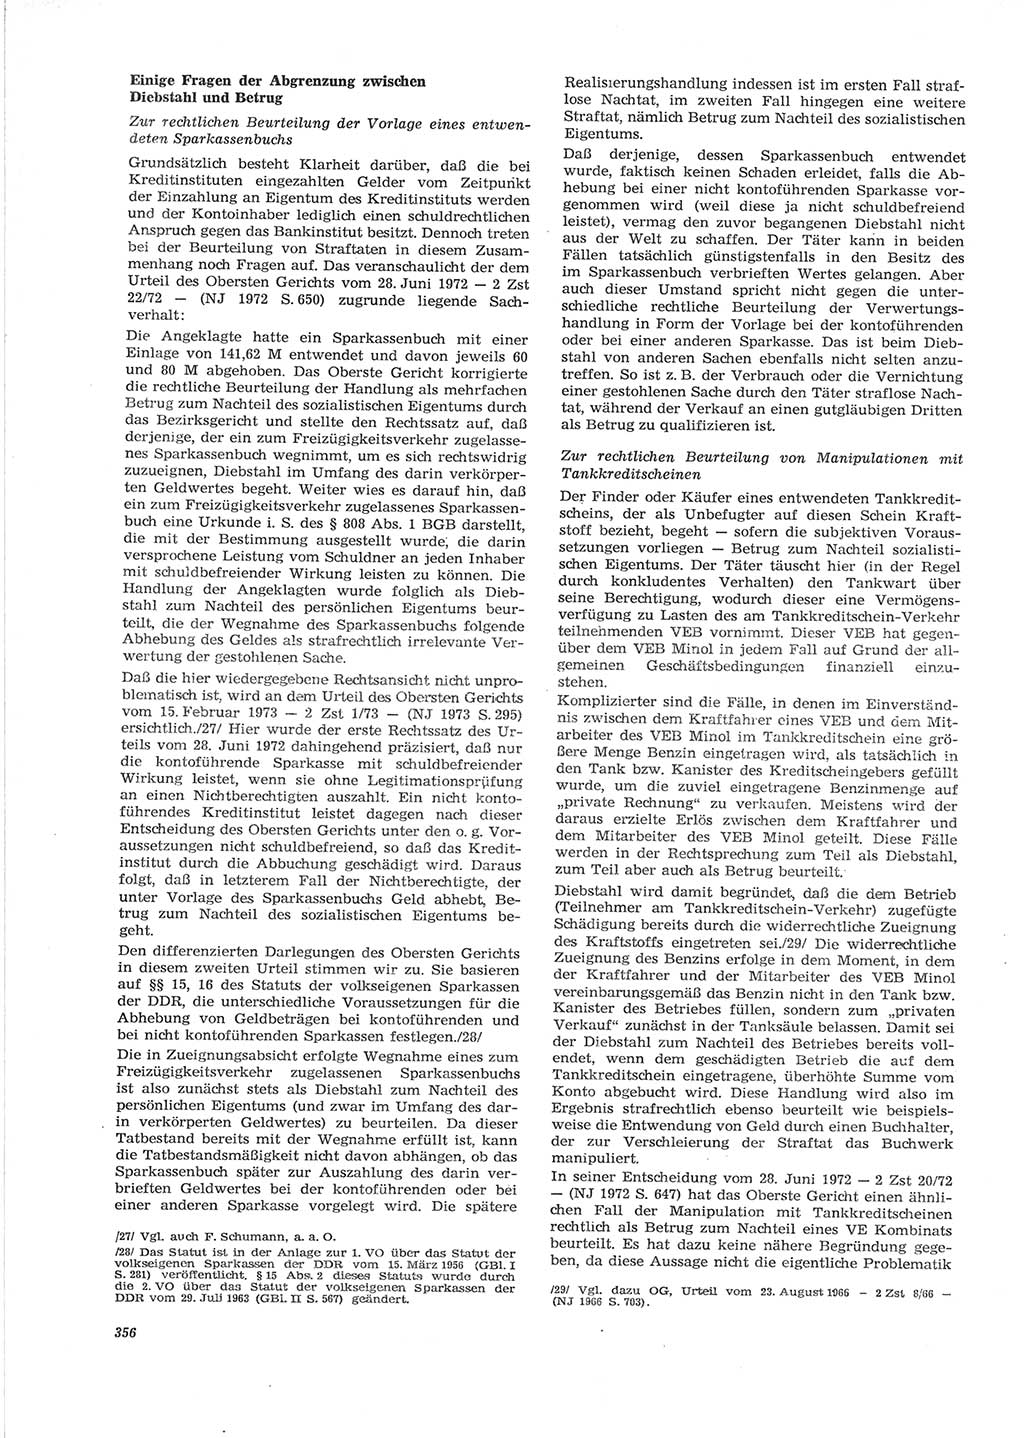 Neue Justiz (NJ), Zeitschrift für Recht und Rechtswissenschaft [Deutsche Demokratische Republik (DDR)], 28. Jahrgang 1974, Seite 356 (NJ DDR 1974, S. 356)